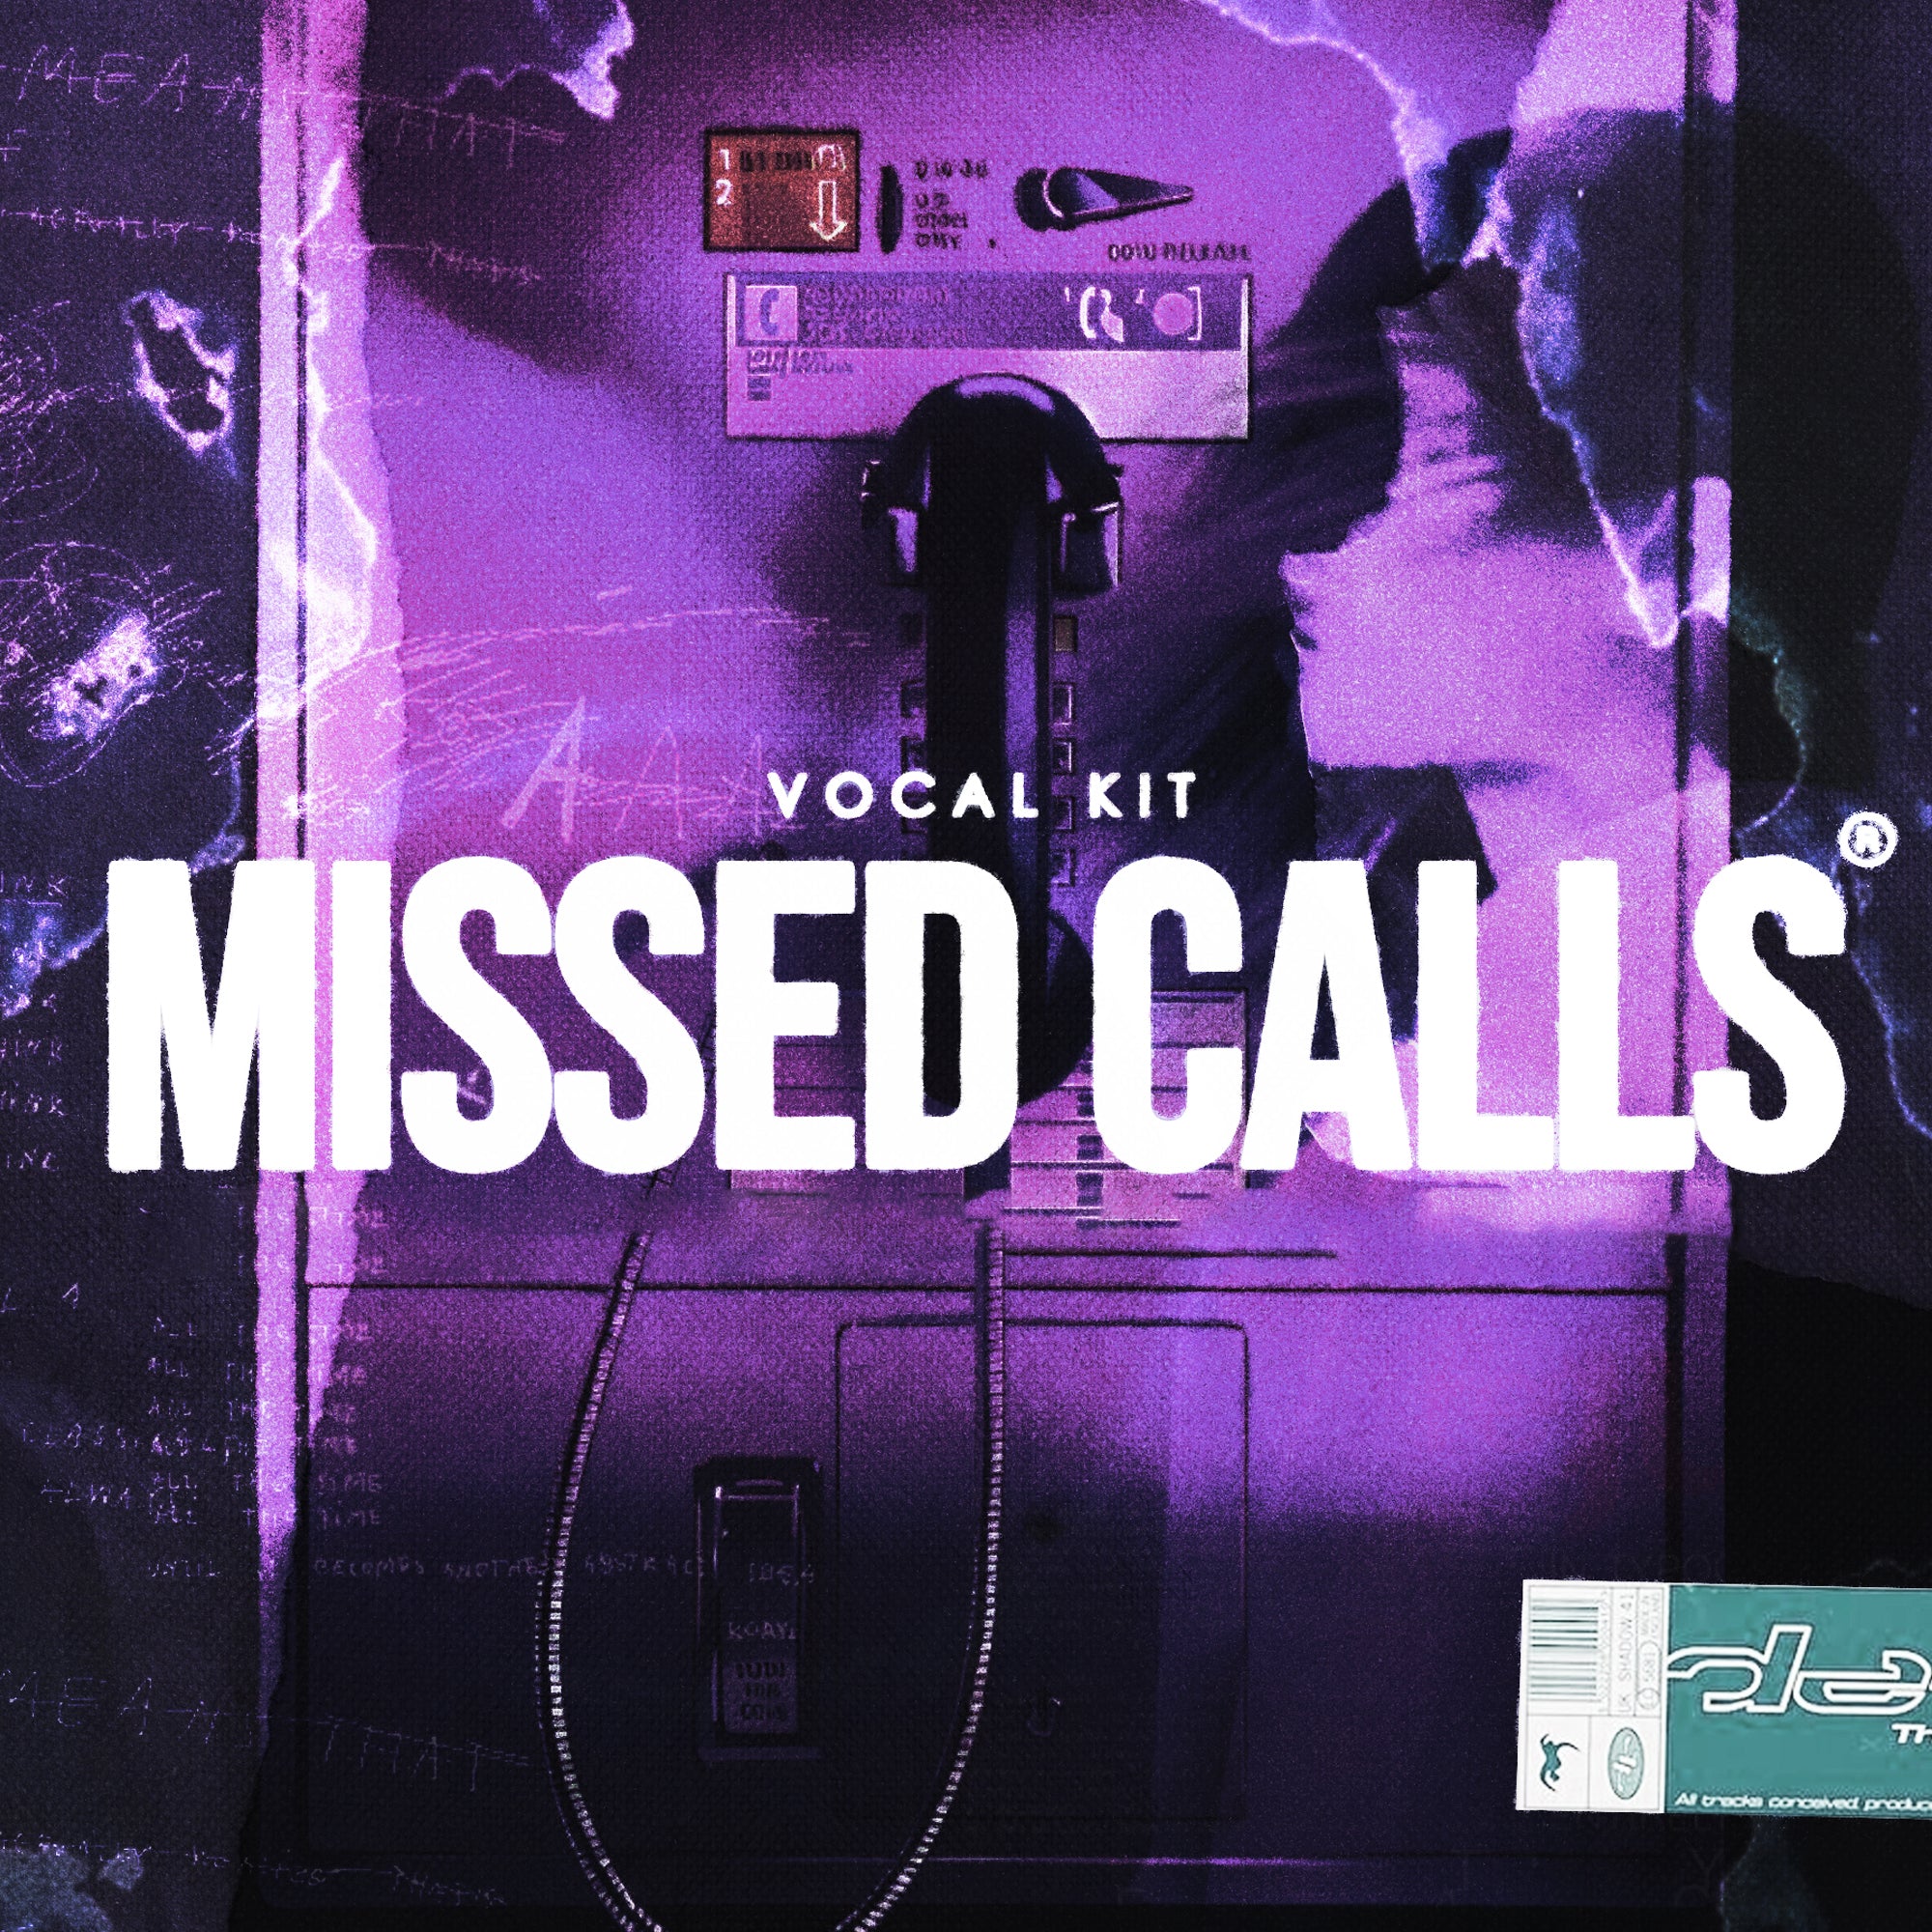 🎤 KXVI X MESIO "MISSED CALLS" VOCAL KIT